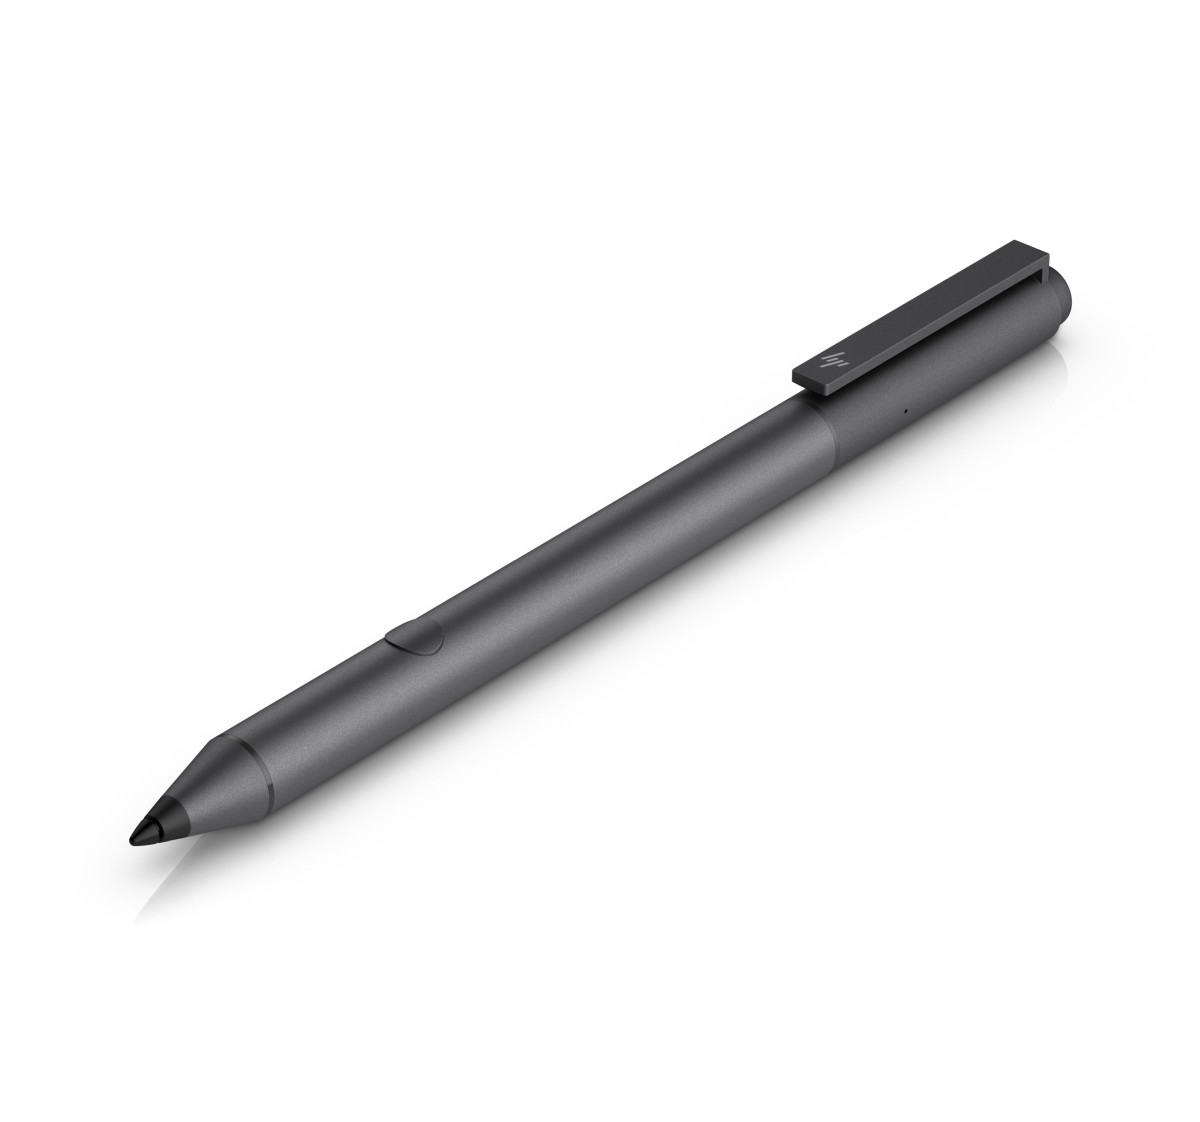 Dotykové pero HP Tilt Pen (2MY21AA)